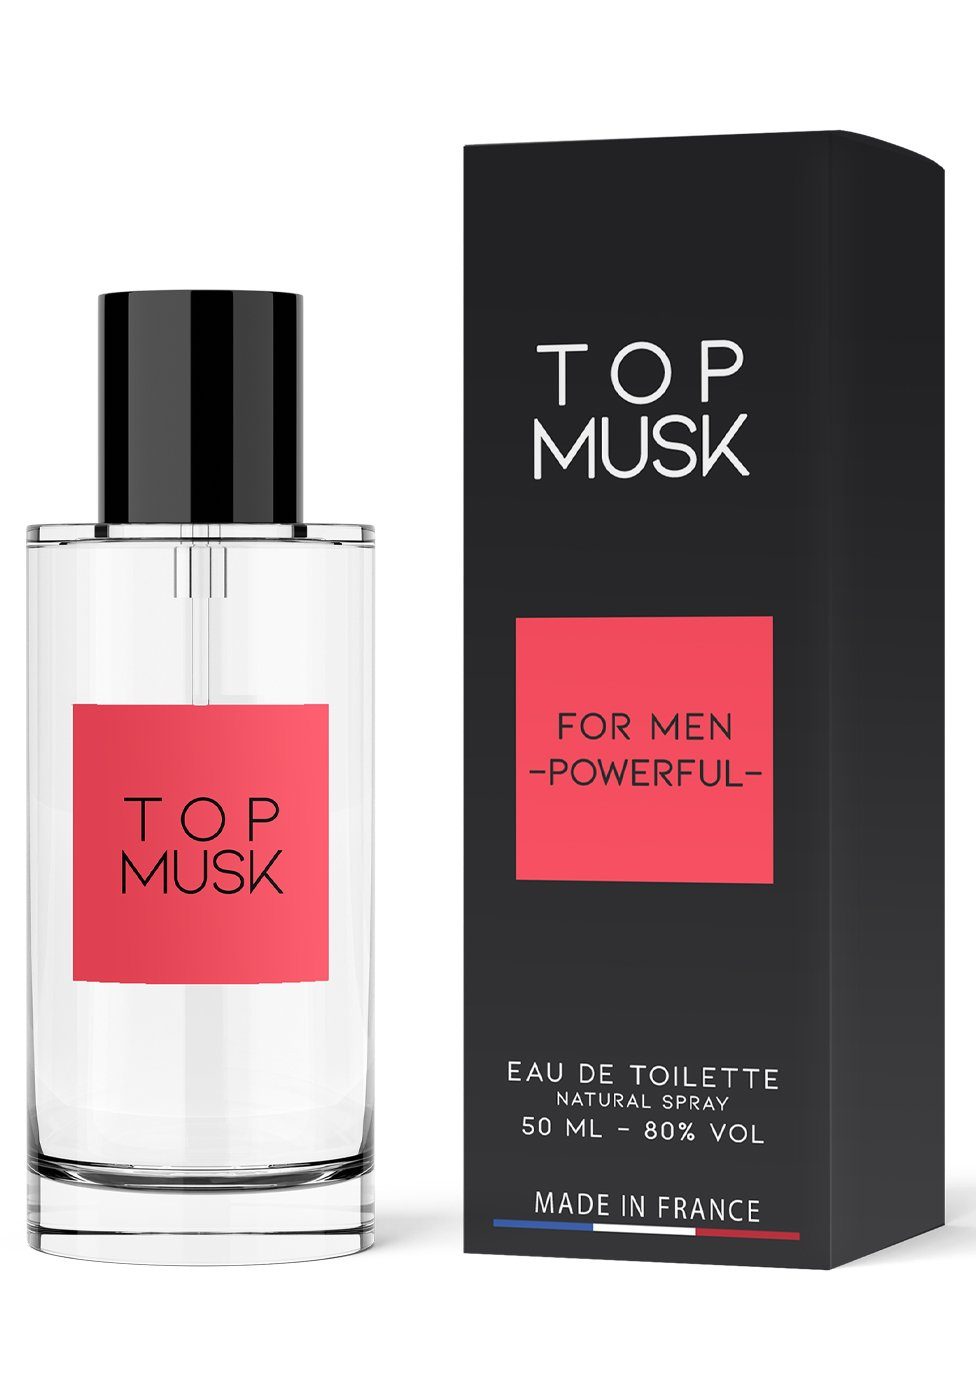 Ruf Eau Musk Top Toilette Men Parfum de for